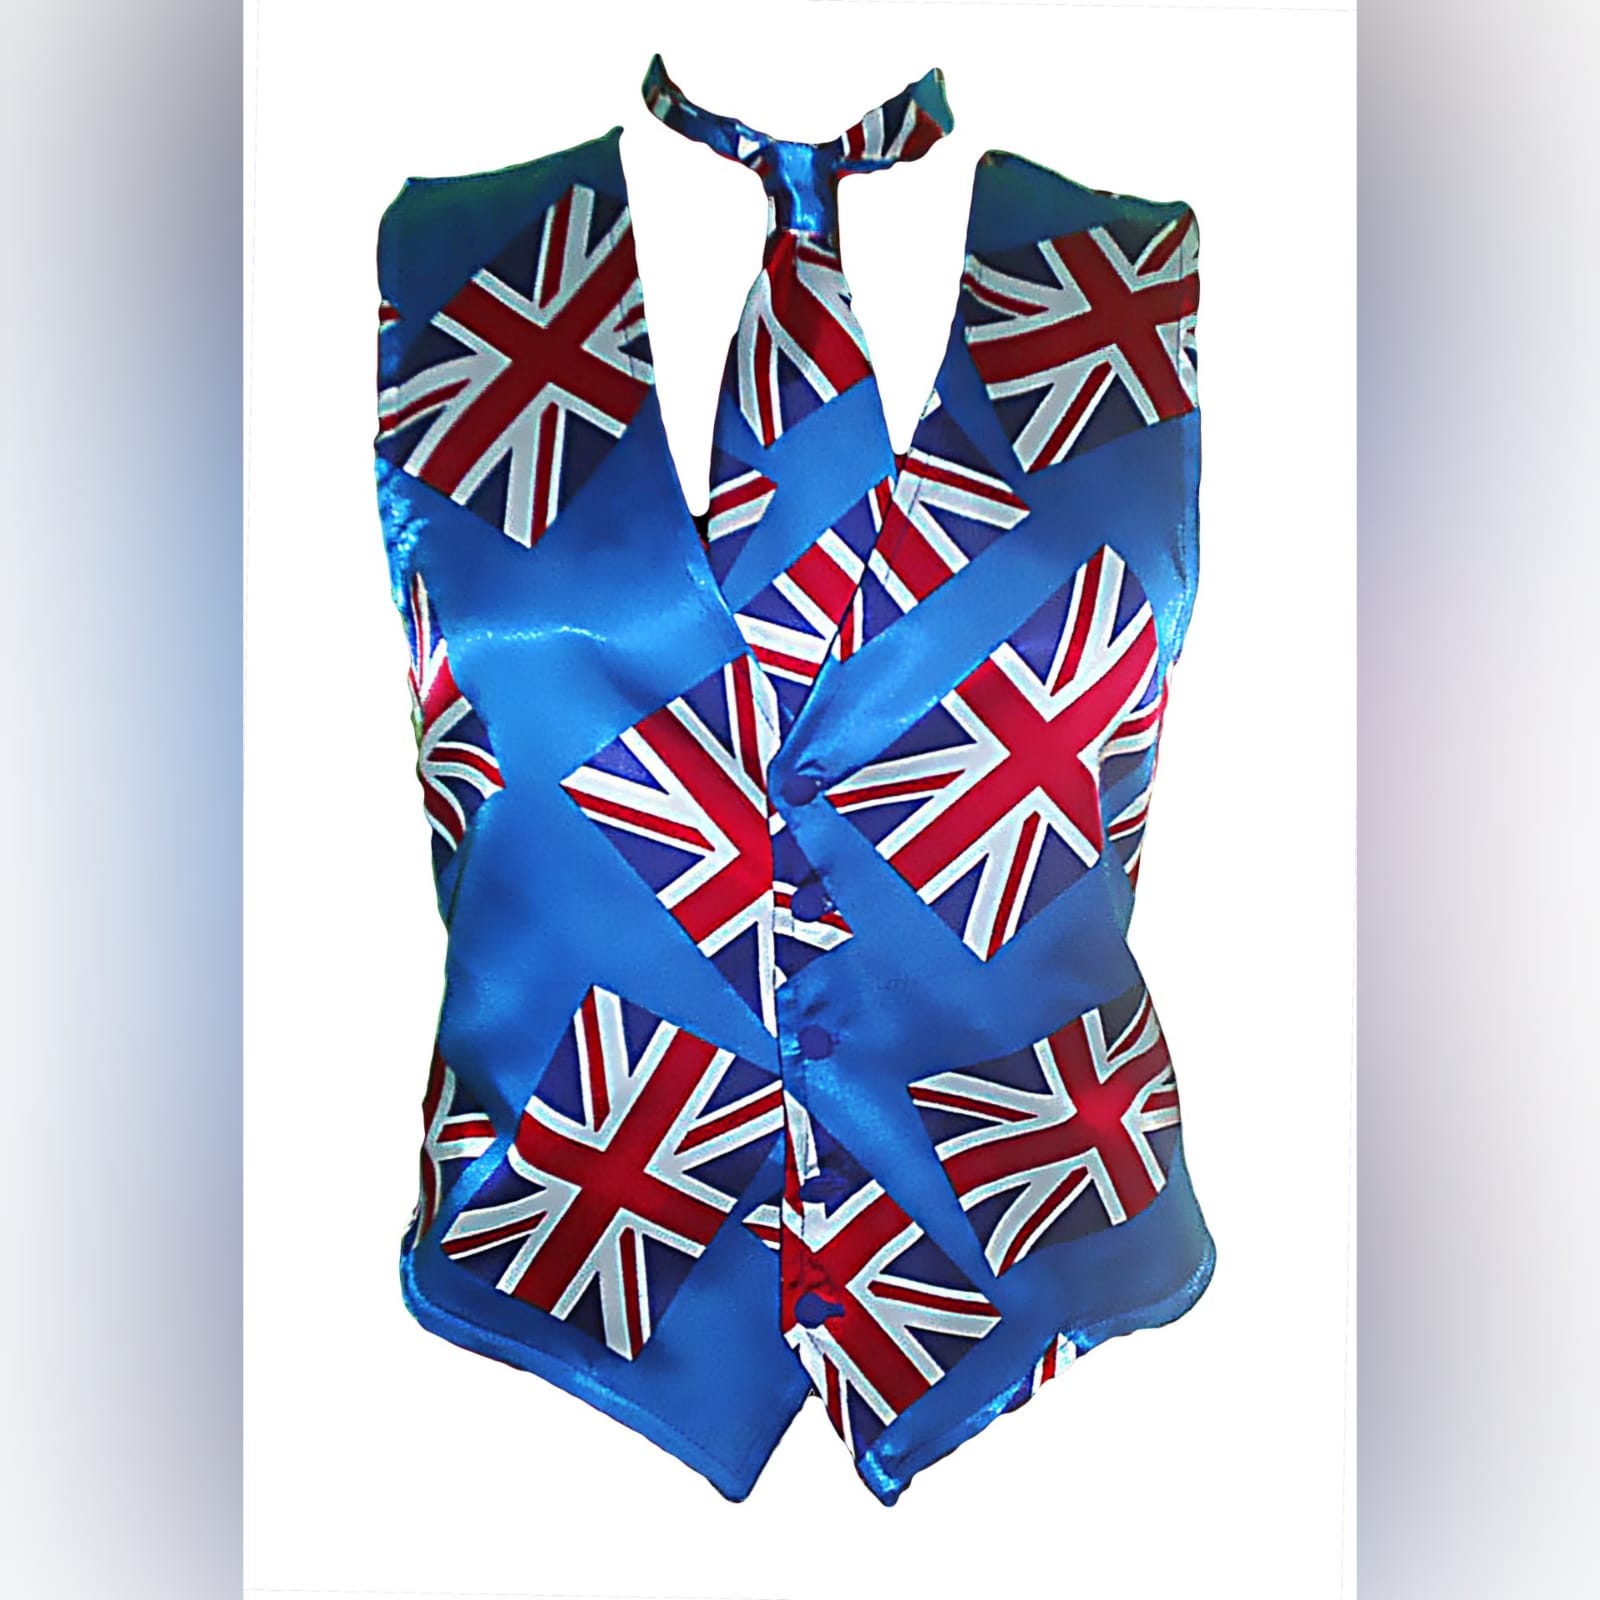 British flag/union jack waistcoat 1 british flag/union jack waistcoat and tie